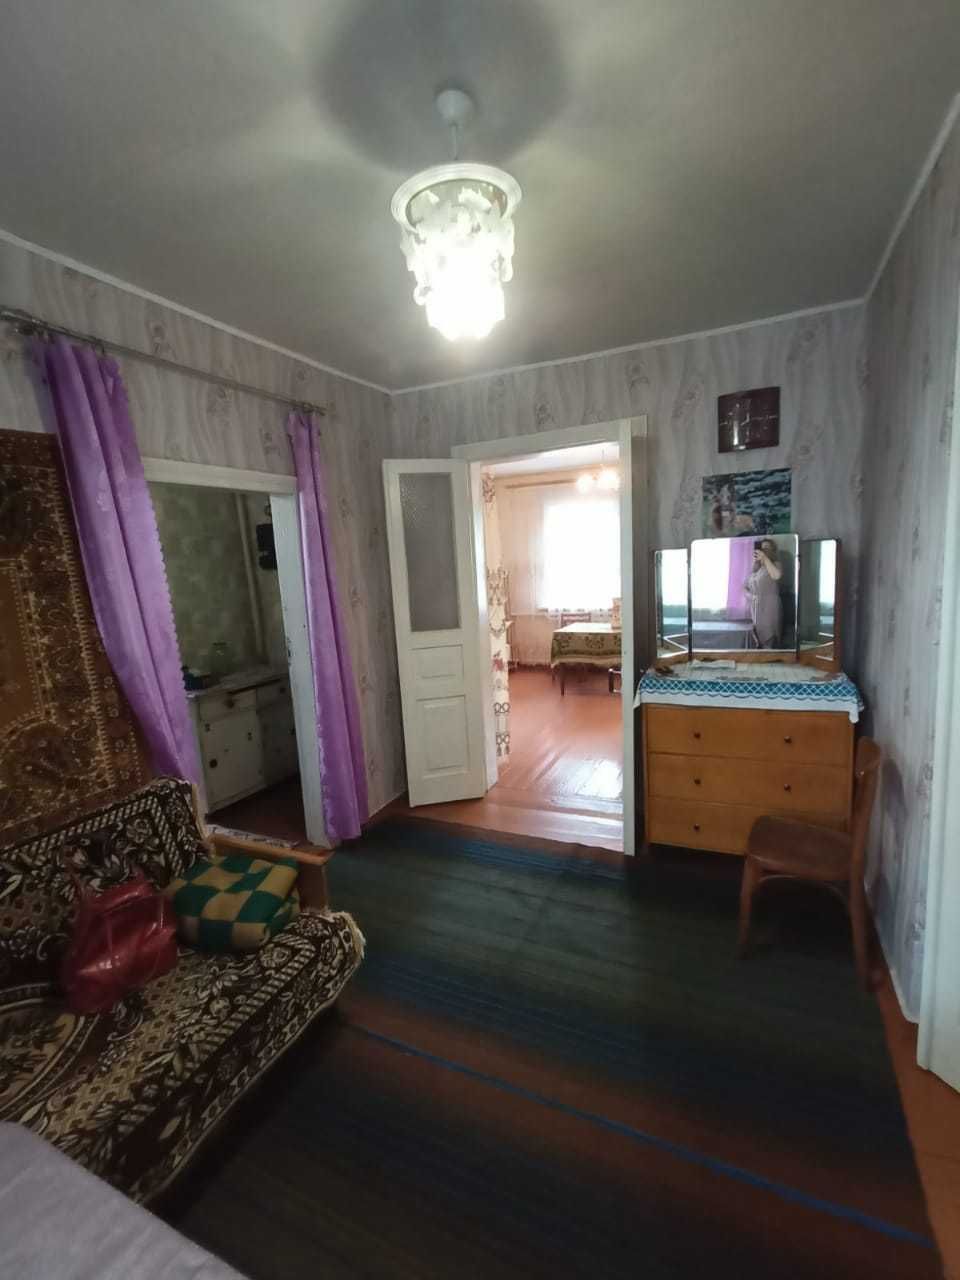 Продаем крепкий кирпичный дом в Эсхаре